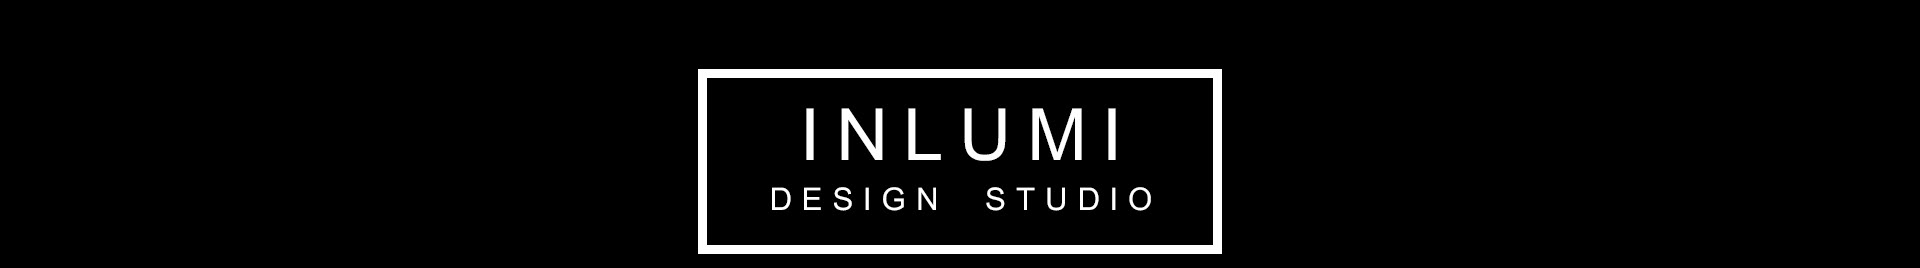 INLUMI DESIGN STUDIO's profile banner